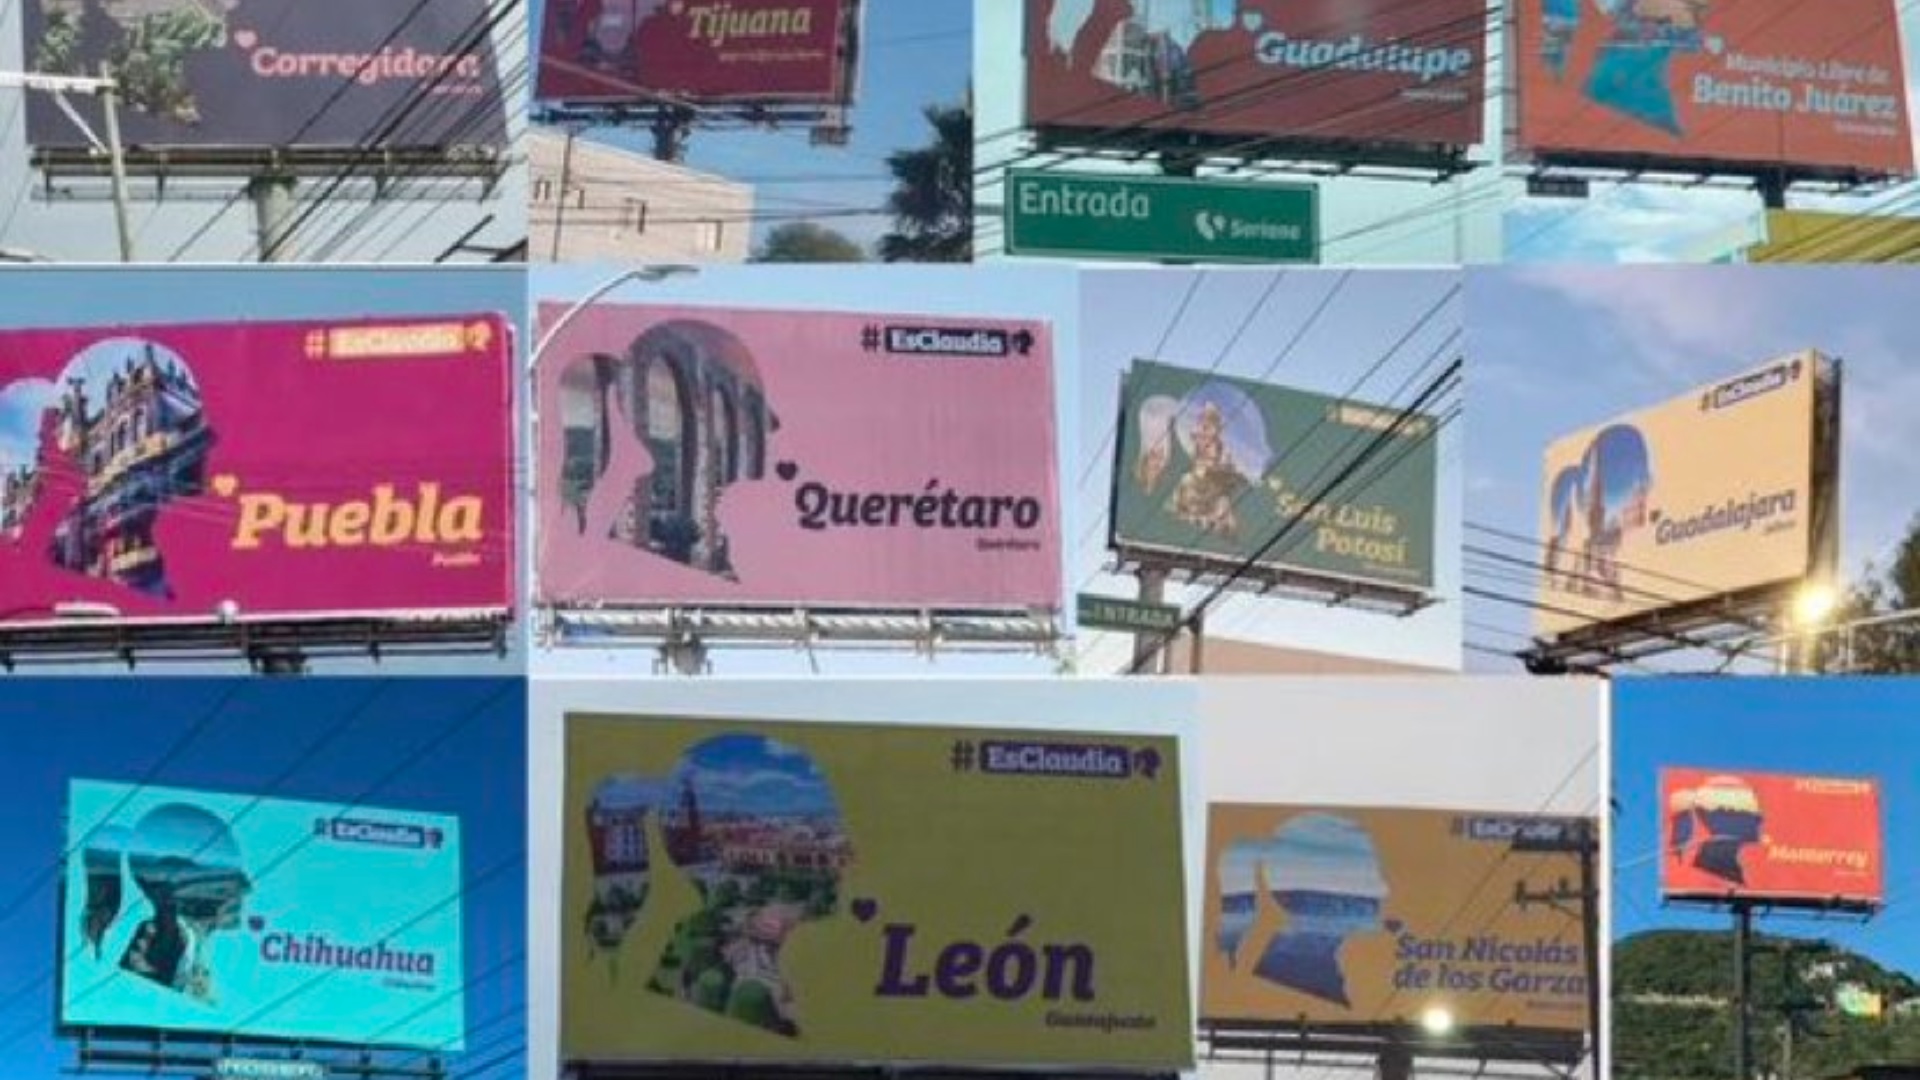 El presidente López Obrador paró de tajo la campaña de los anuncios espectaculares de Claudia Sheinbaum no sólo por lo burda y dispendiosa, sino porque sabía que ya venía la segunda etapa, diseñada e implementada por la empresa favorita del régimen, Heurística Comunicación SC.